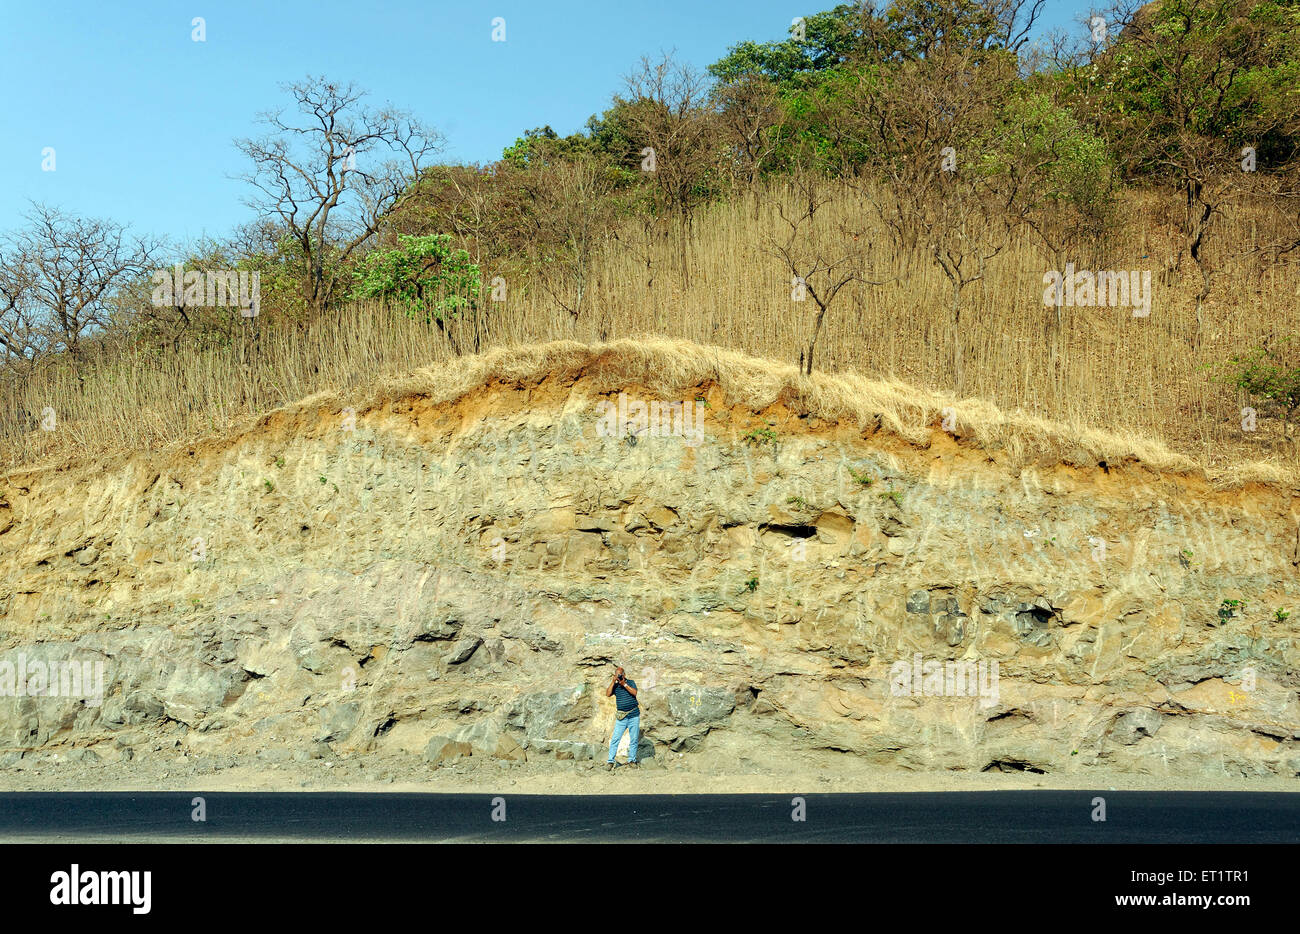 Fotograf am Berg stehen Steinbruch, Maharashtra Indien Asien Herr #556 Stockfoto